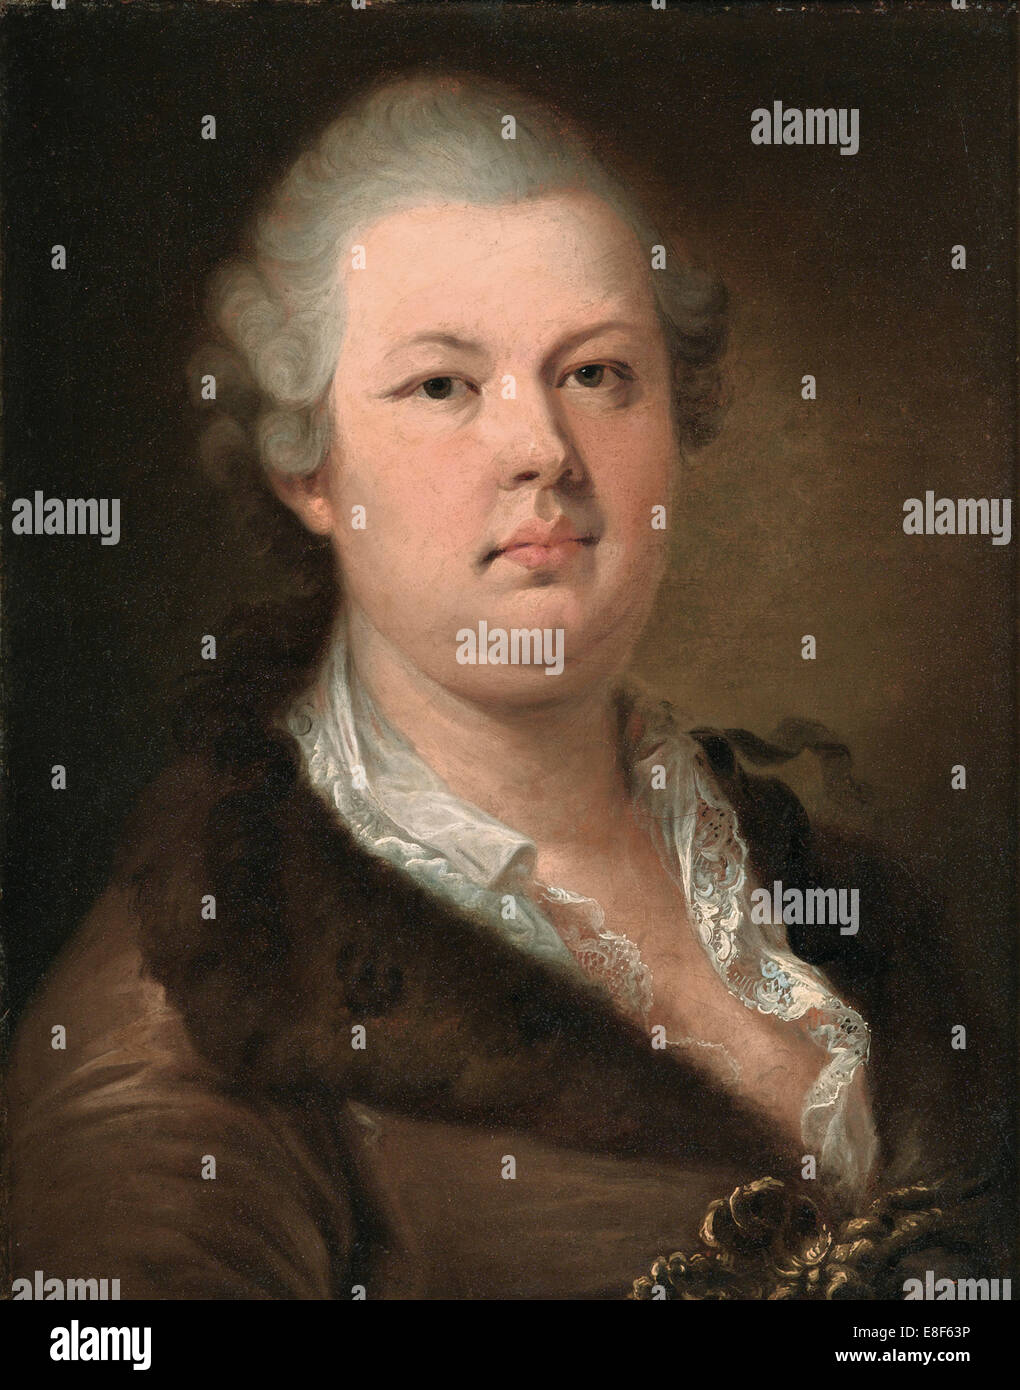 Count Alessandro di Cagliostro (1743-1795). Artist: Lampi, Johann-Baptist von, the Elder (1751-1830) Stock Photo